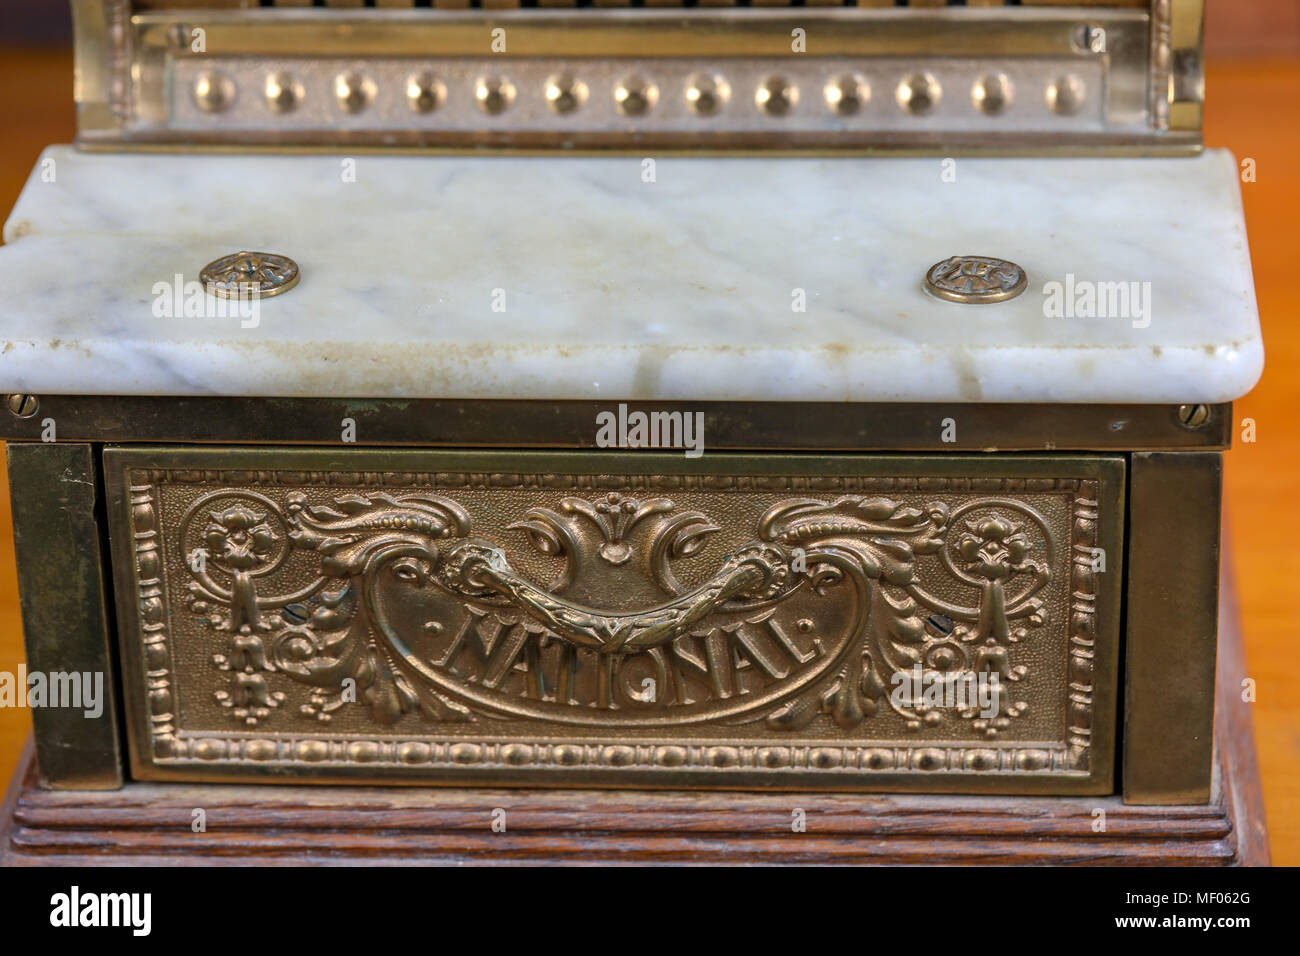 Immagini di antichi 313 Nazionale registratore di cassa, fabbricato nel 1912 da National Cash Register Co. Mostrato è vista frontale del bronzo registratore di cassa. Foto Stock